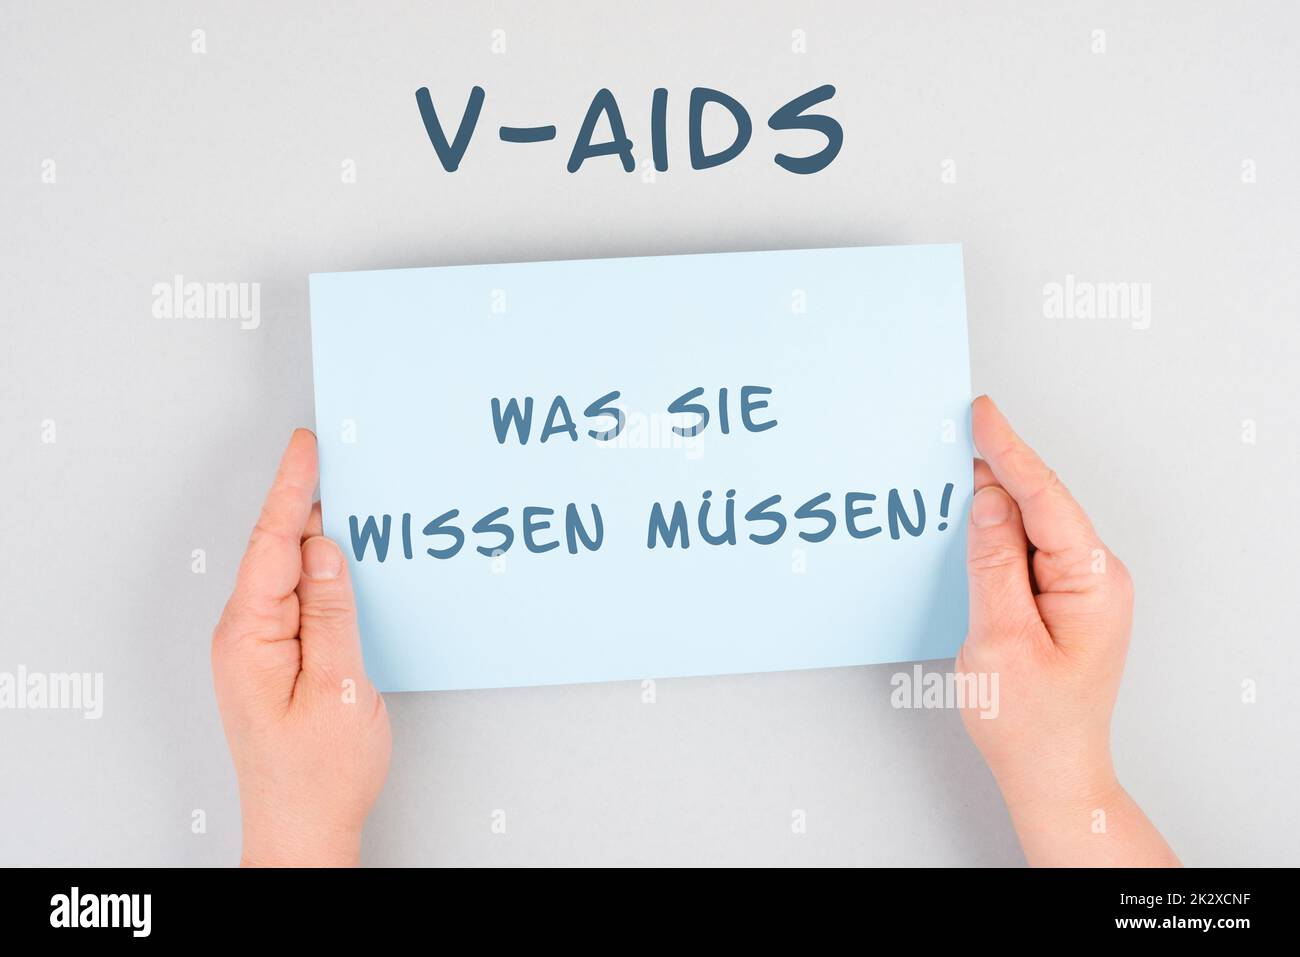 Die Worte V-Aids, was Sie wissen müssen, stehen in deutscher Sprache auf einem Papier, neue Autoimmunerkrankung durch Covid-19-Impfung, Immunsystemschäden, Gesundheitsproblem Stockfoto